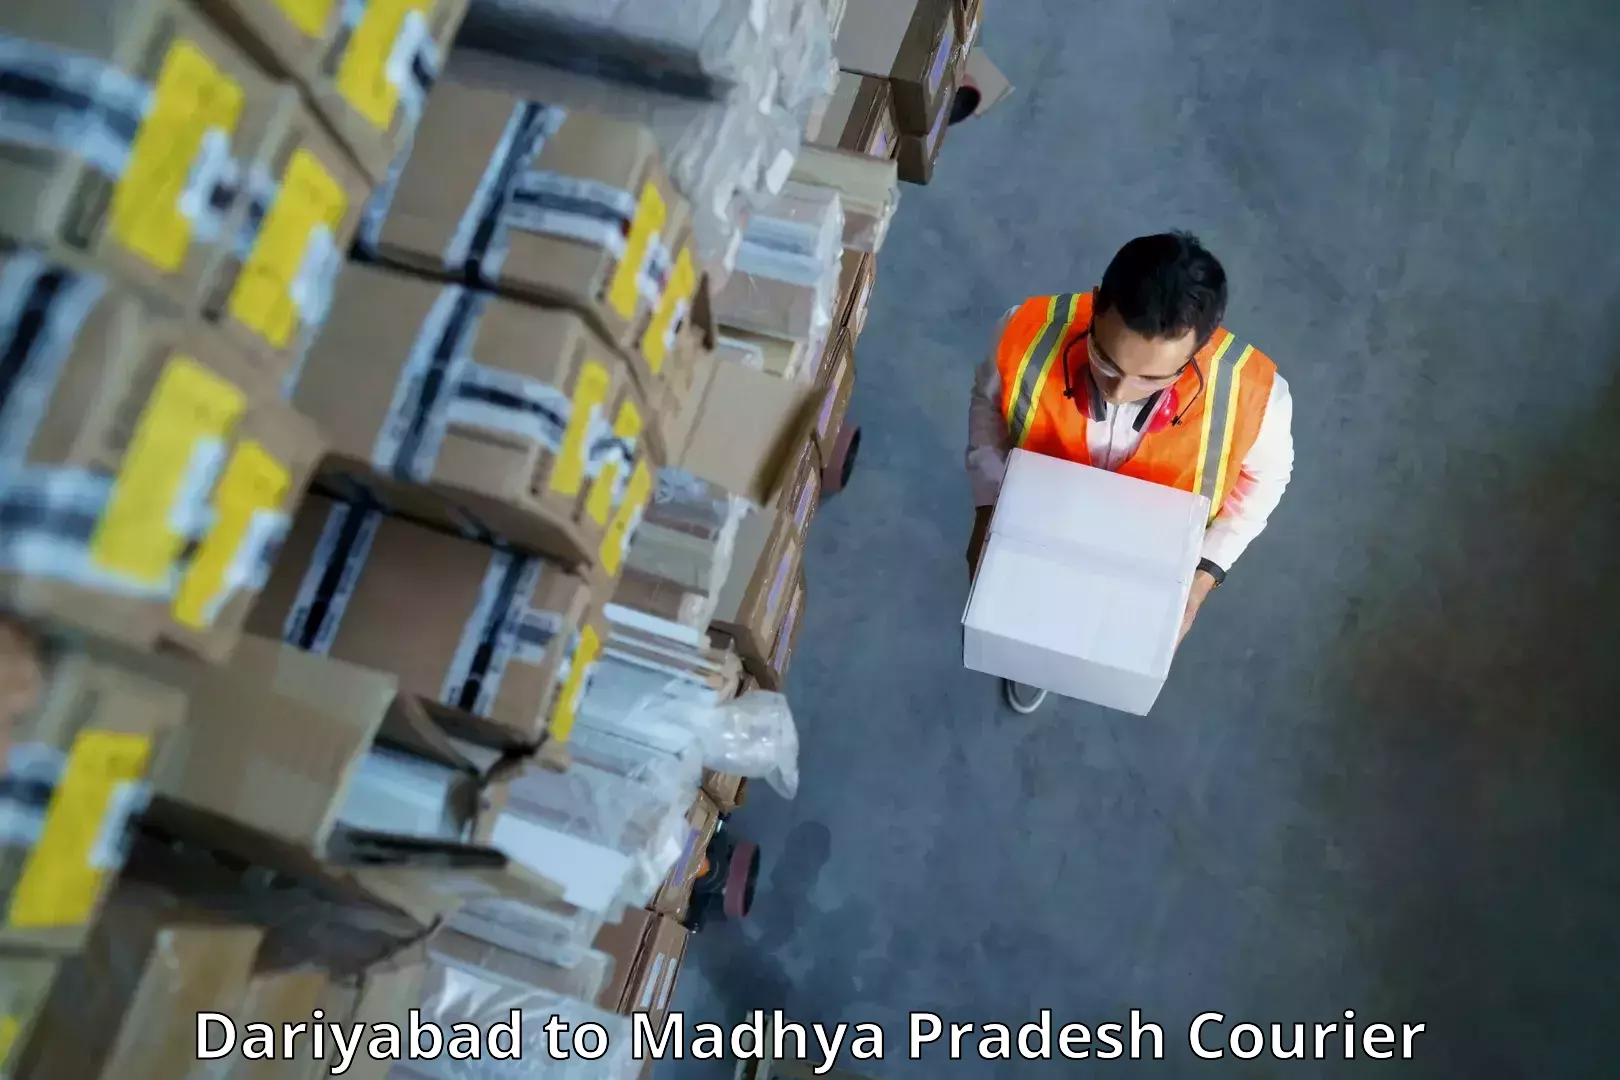 Pharmaceutical courier Dariyabad to Sendhwa